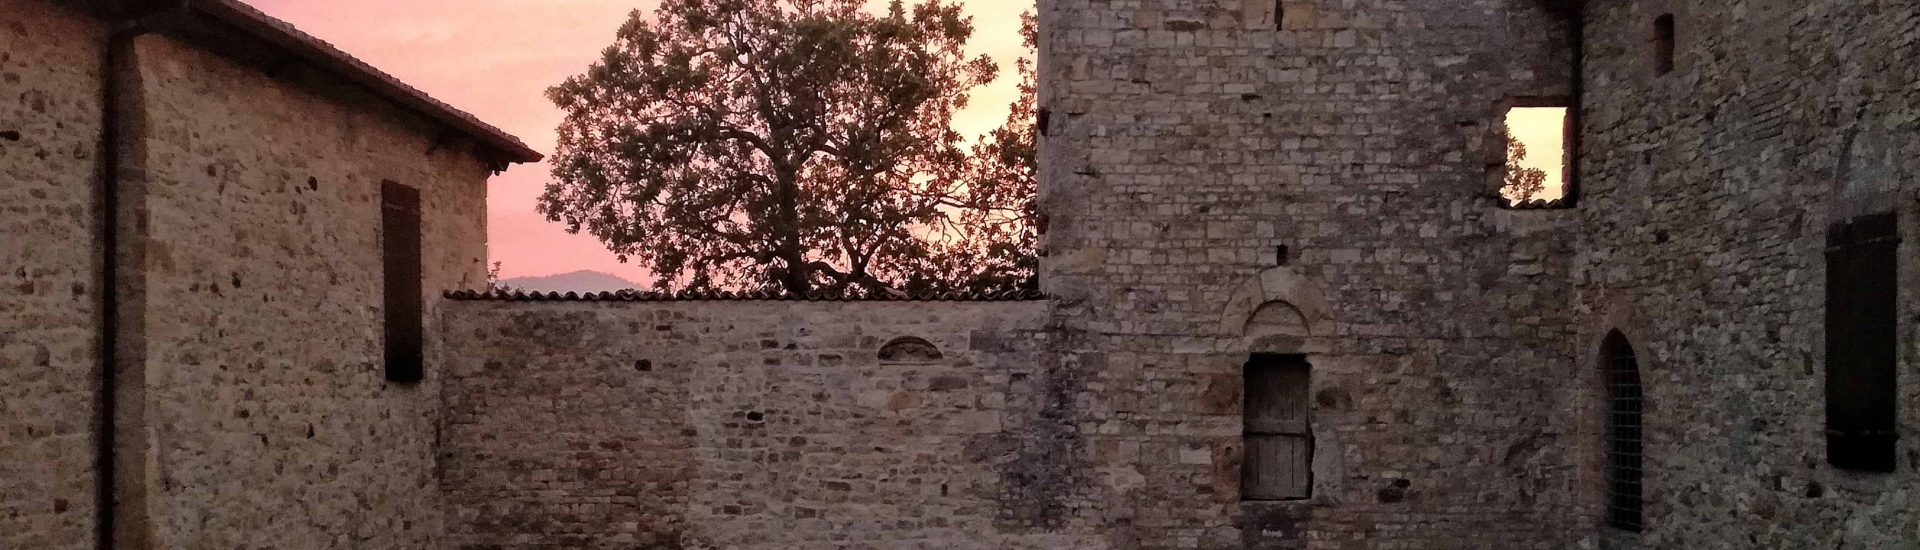 Castello di Contignaco - Corte interna all'ora del tramonto foto di: |Ph. Credits Castello di Contignaco 2018| - www.castellodicontignaco.it